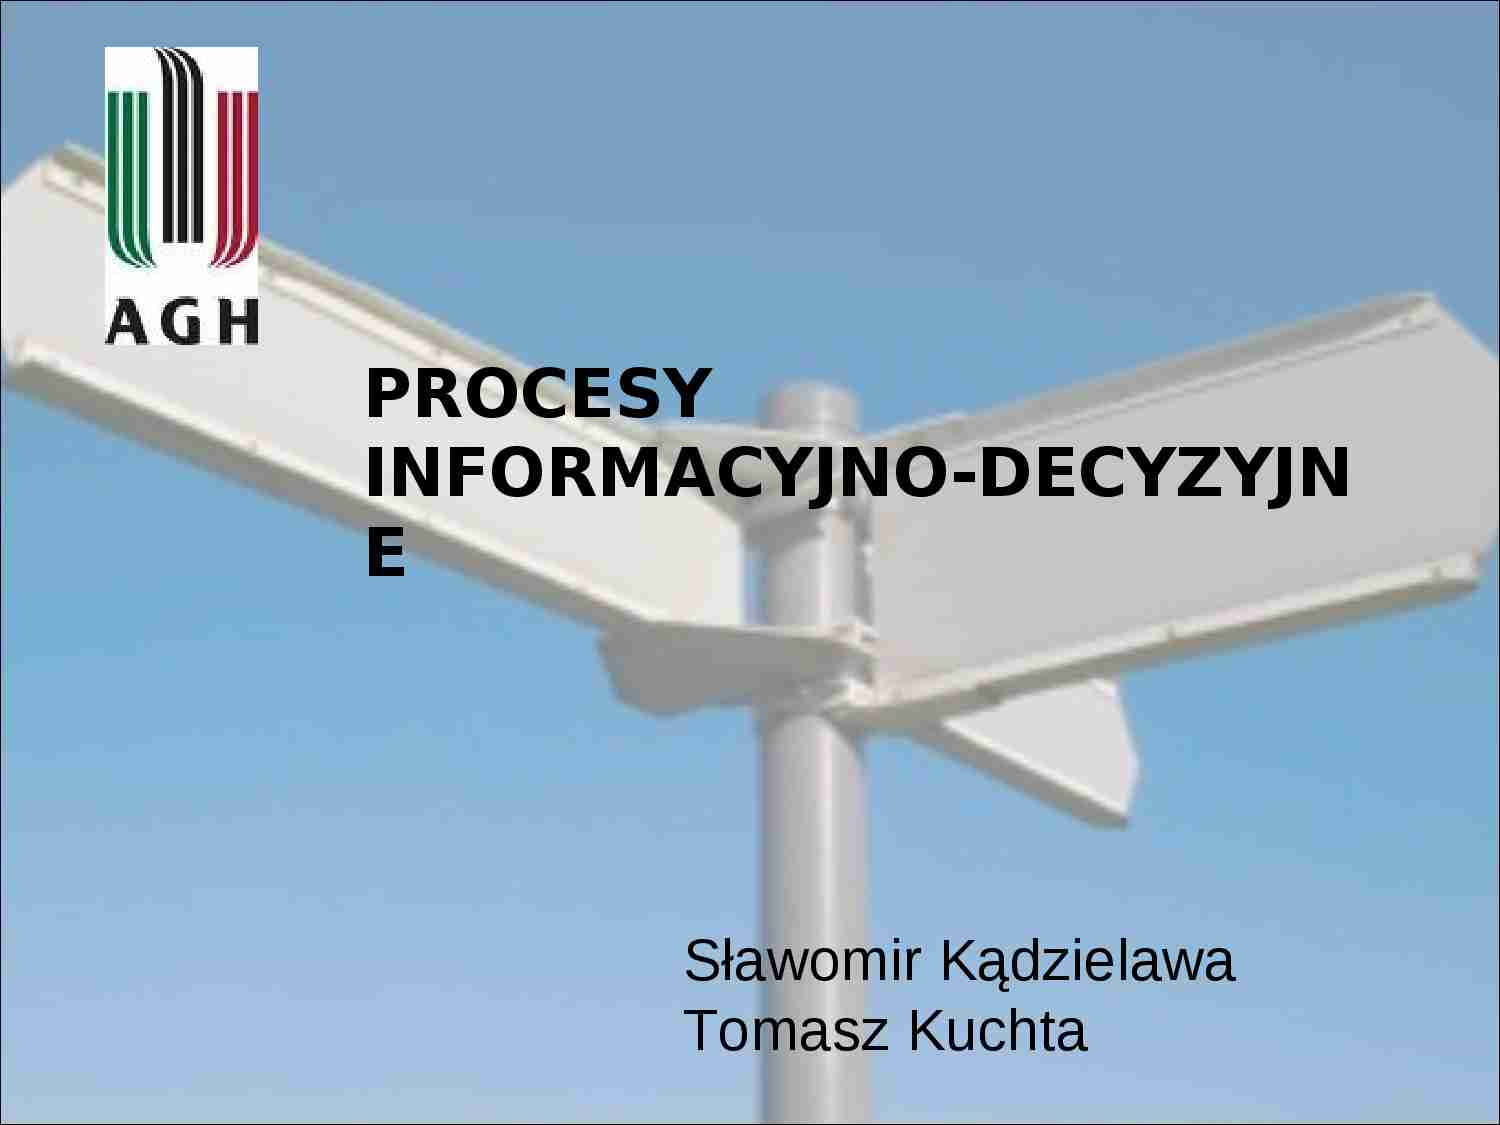 Procesy informacyjno-decyzyjne - Percepcja - strona 1